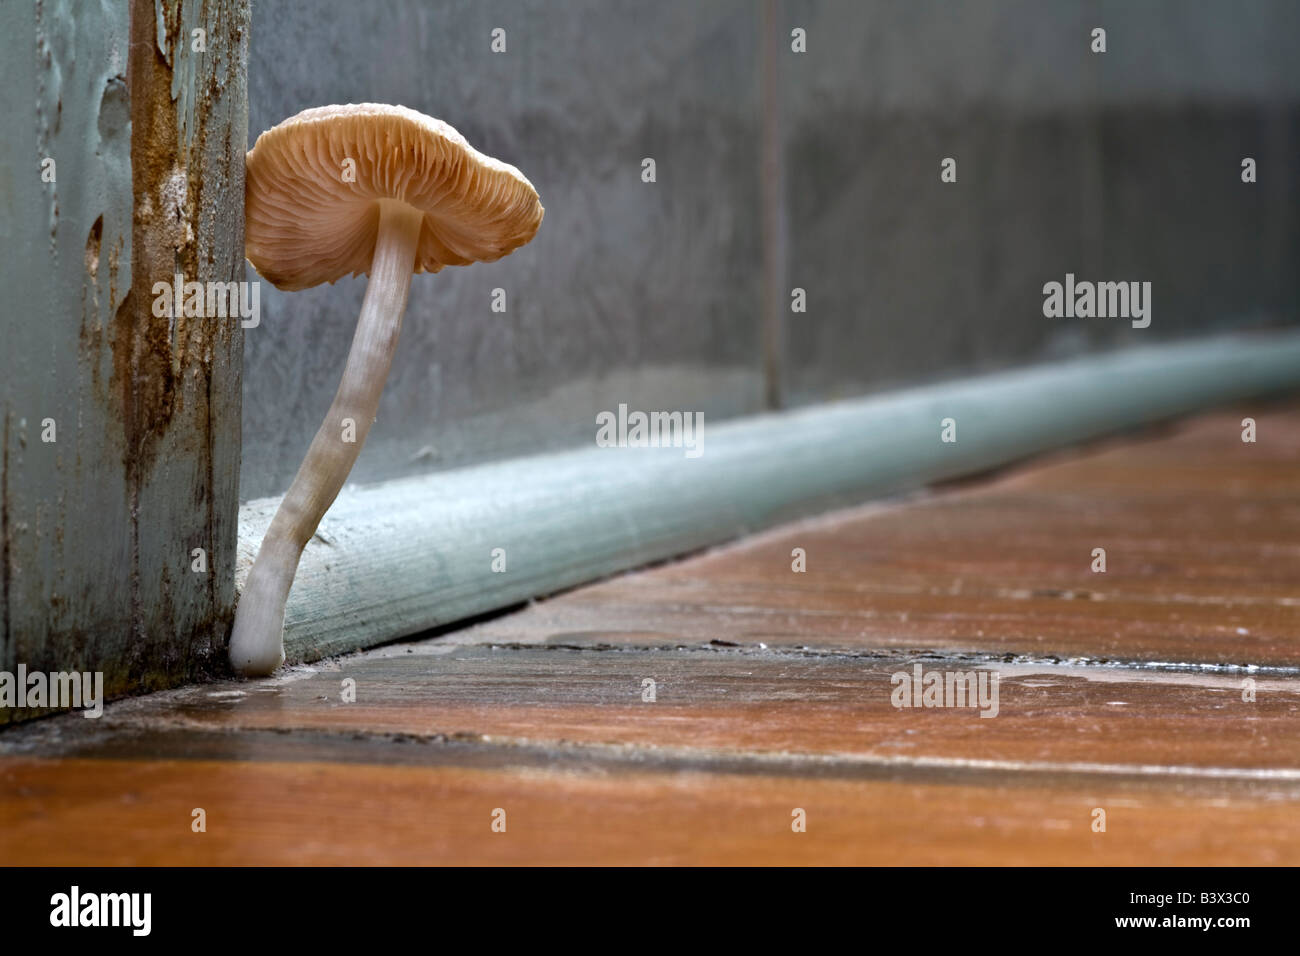 A Mycena mushroom growing on a floor. Champignon de type mycène (Mycena sp) poussant sur un parquet. Stock Photo